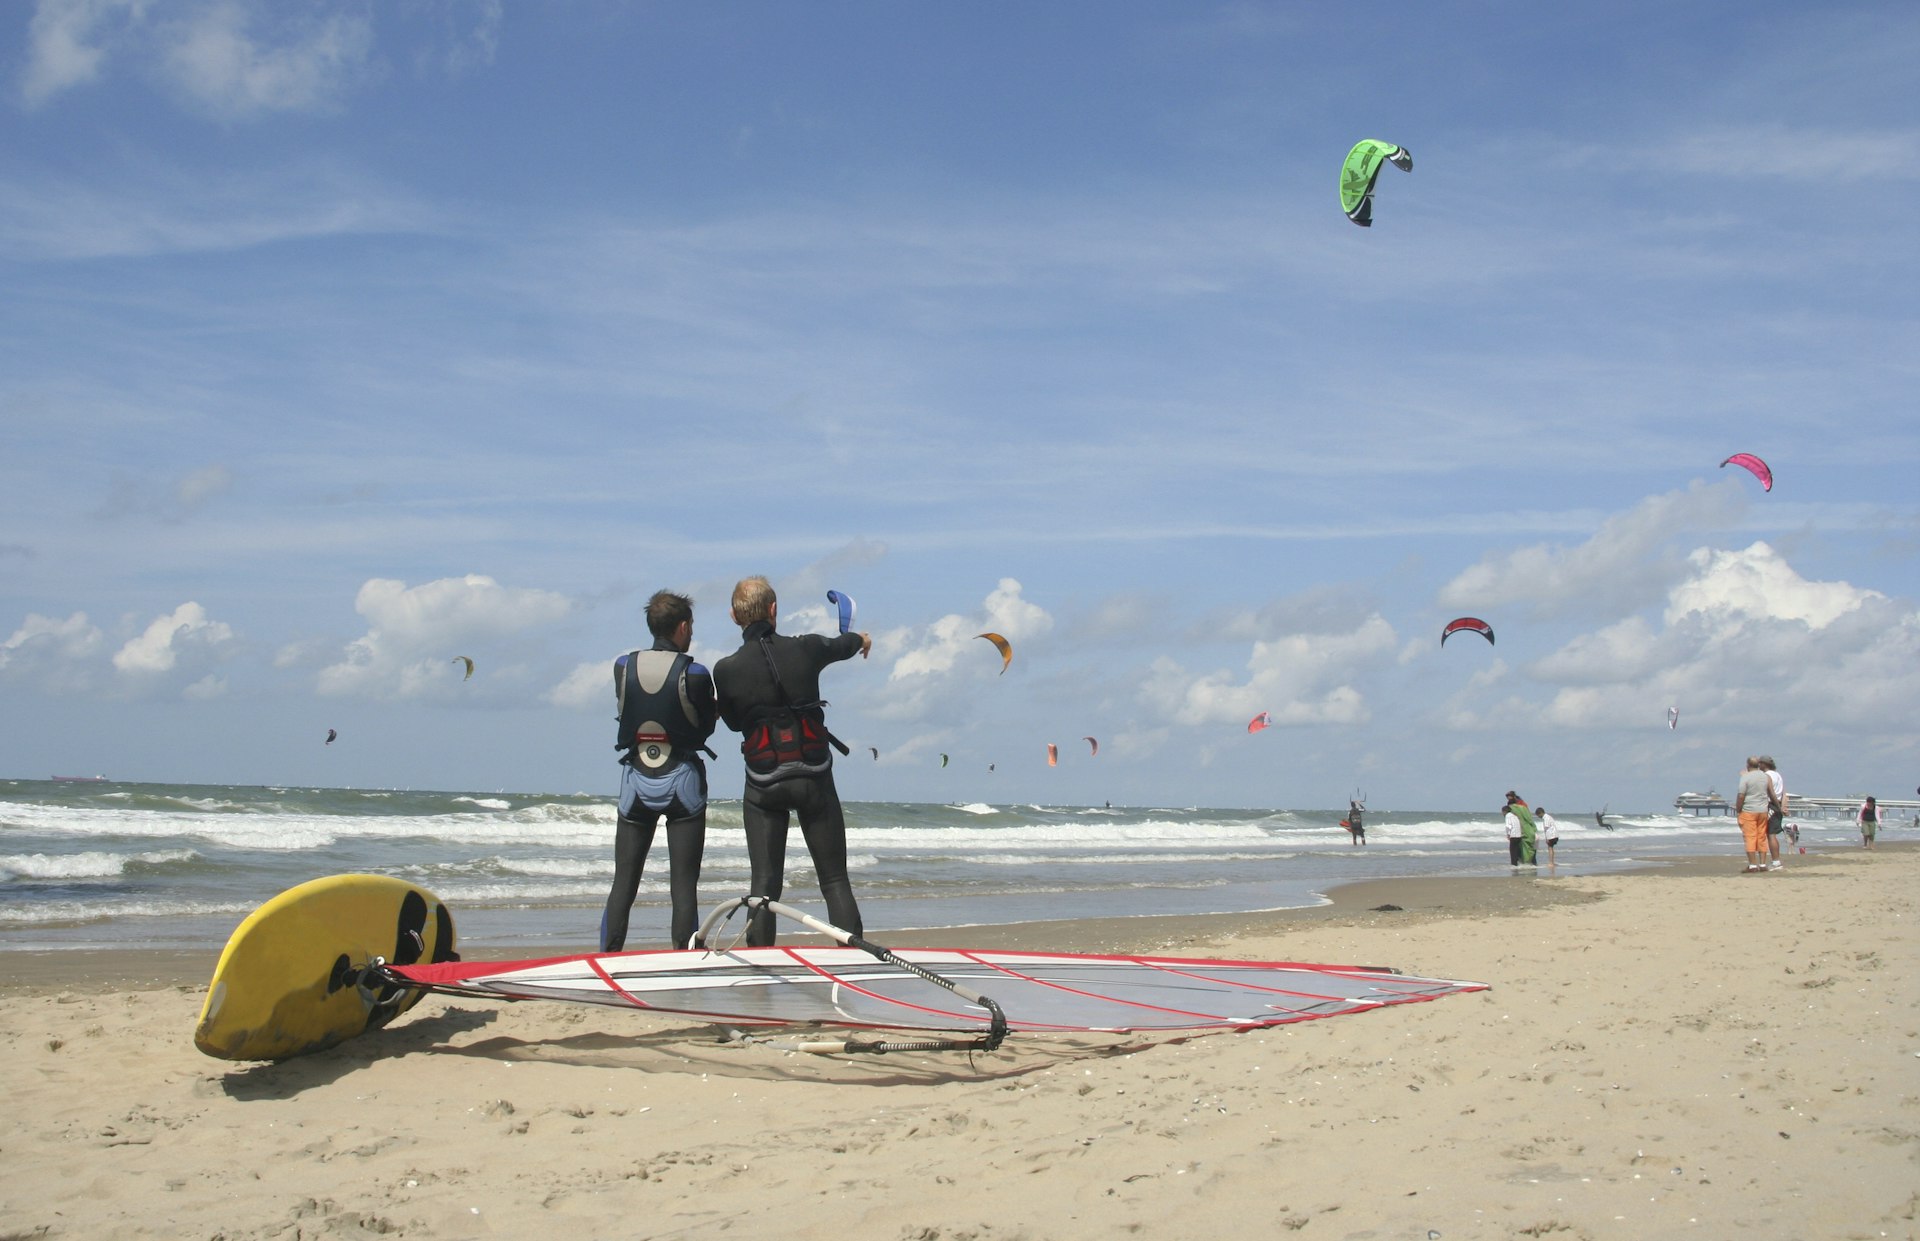 Windsurfers watching as kiteboarders take flight